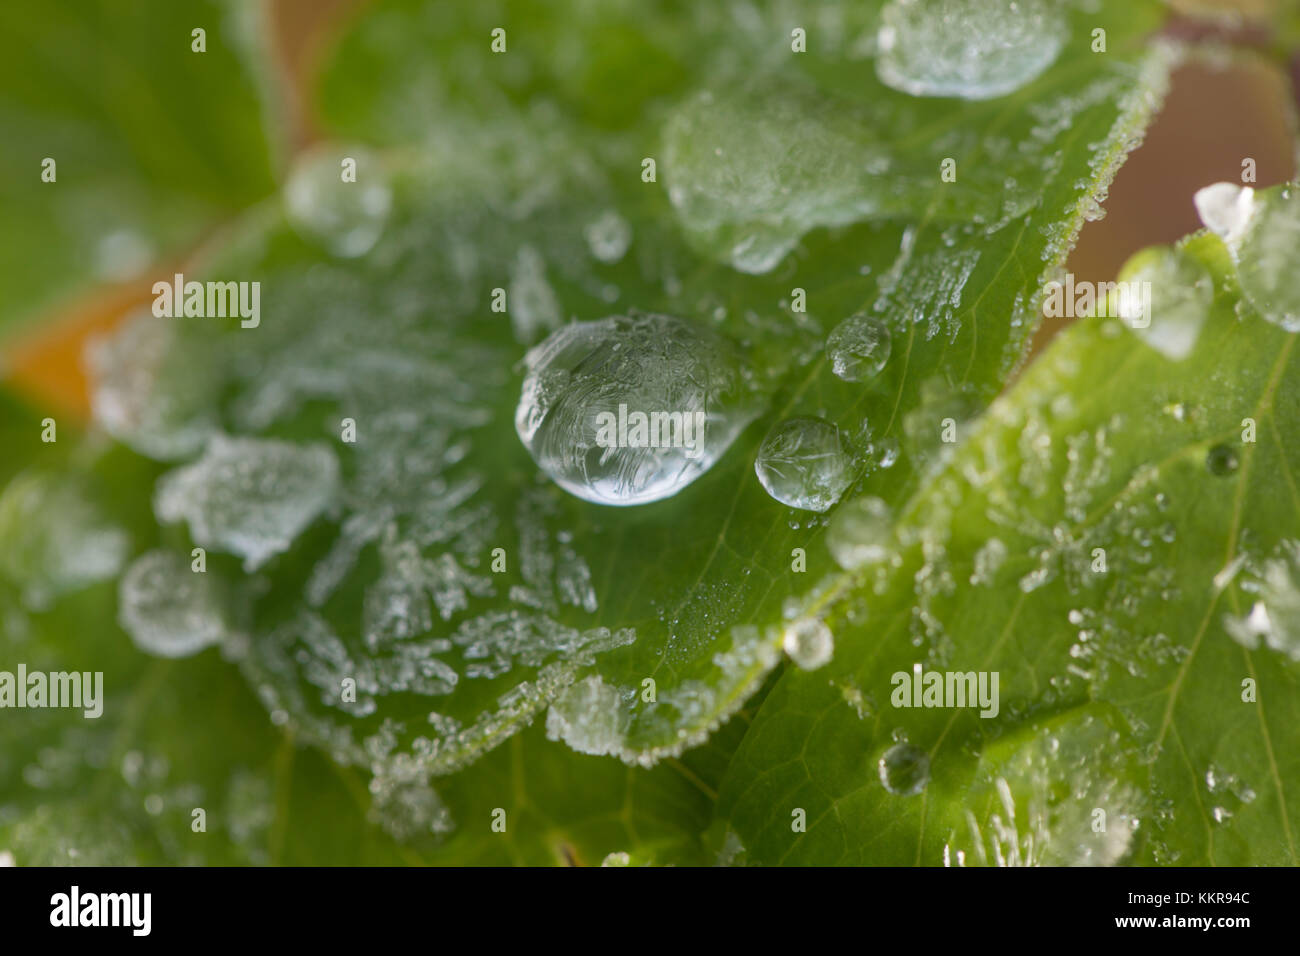 Les gouttelettes d'eau gelée sur les feuilles des plantes vertes Banque D'Images